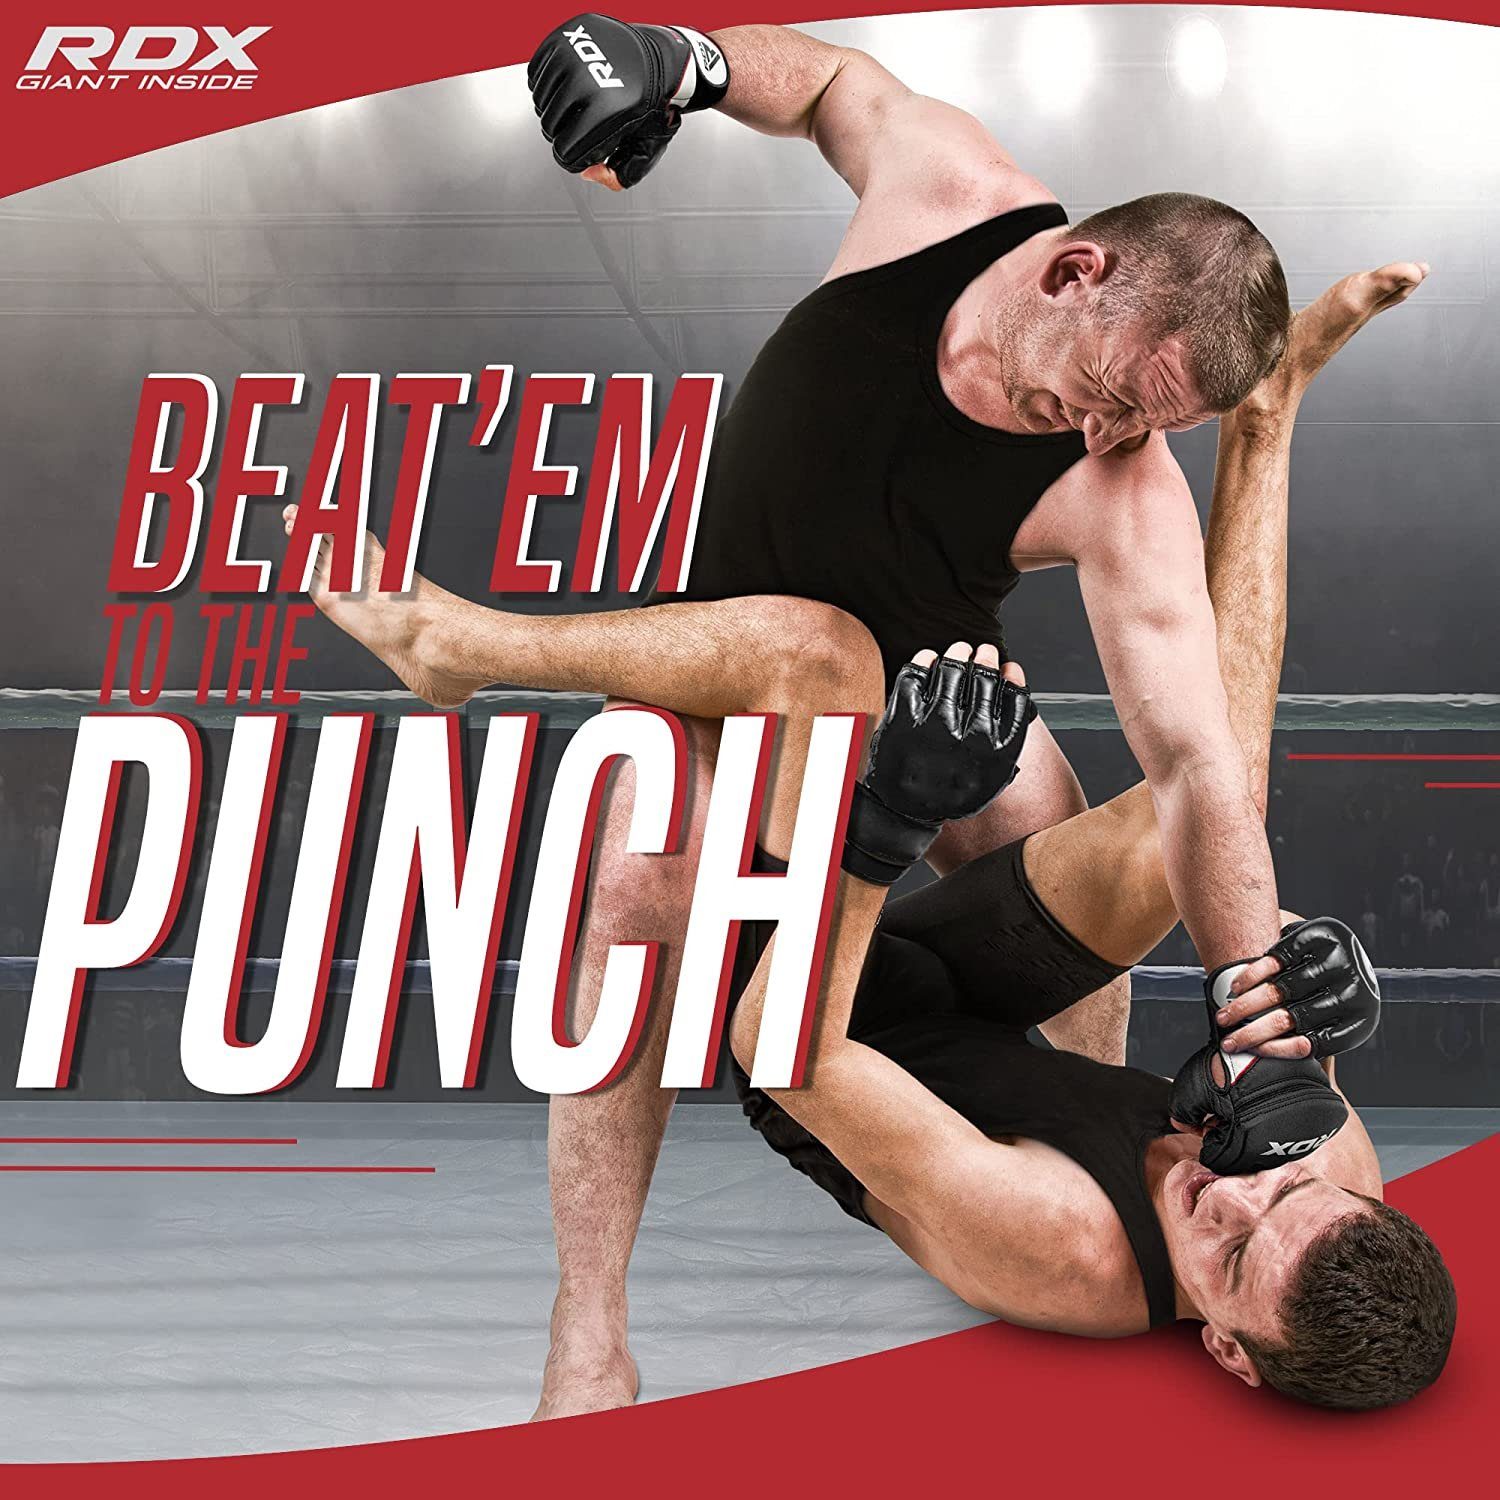 Gloves RDX MMA Boxsack Sports Kampfsport RDX Black MMA-Handschuhe MMA Handschuhe, Professionelle